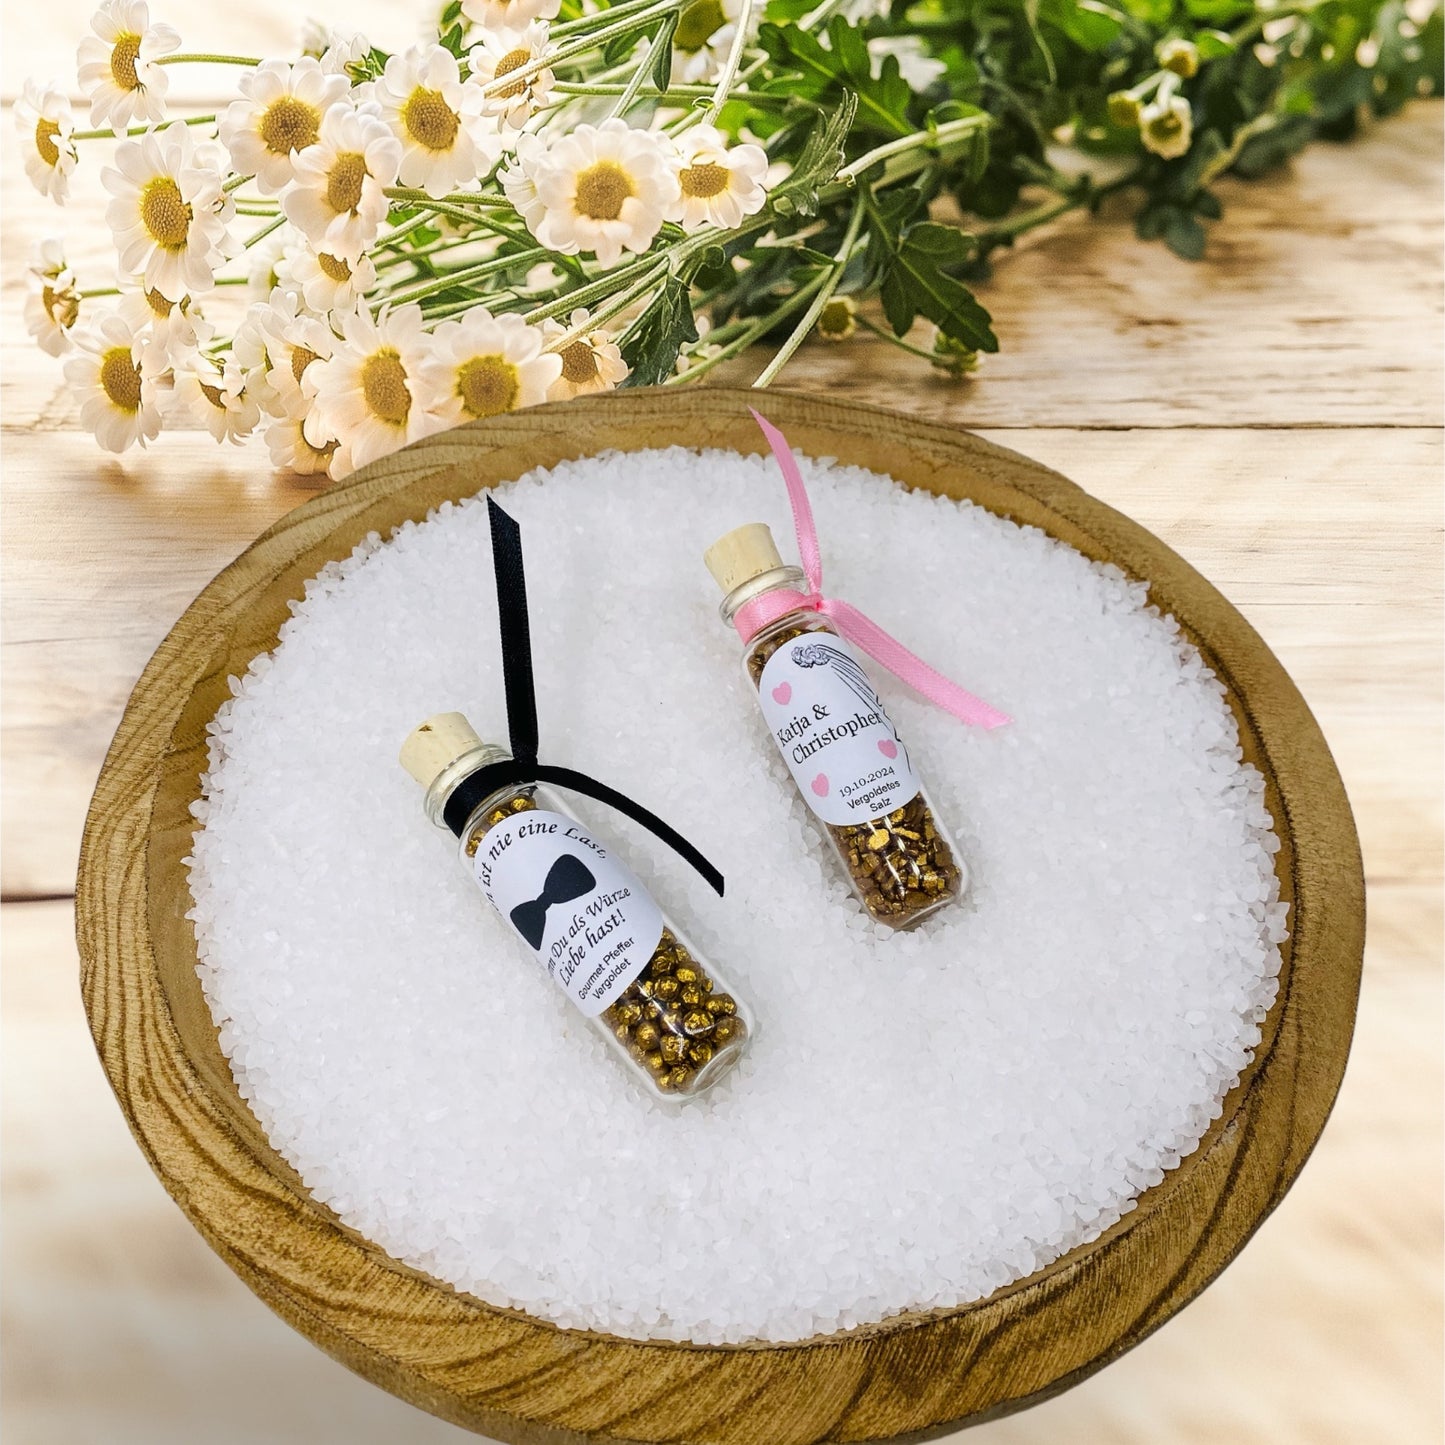 Salz und Pfeffer als zeitloses Gastgeschenk für eure Hochzeitsfeier